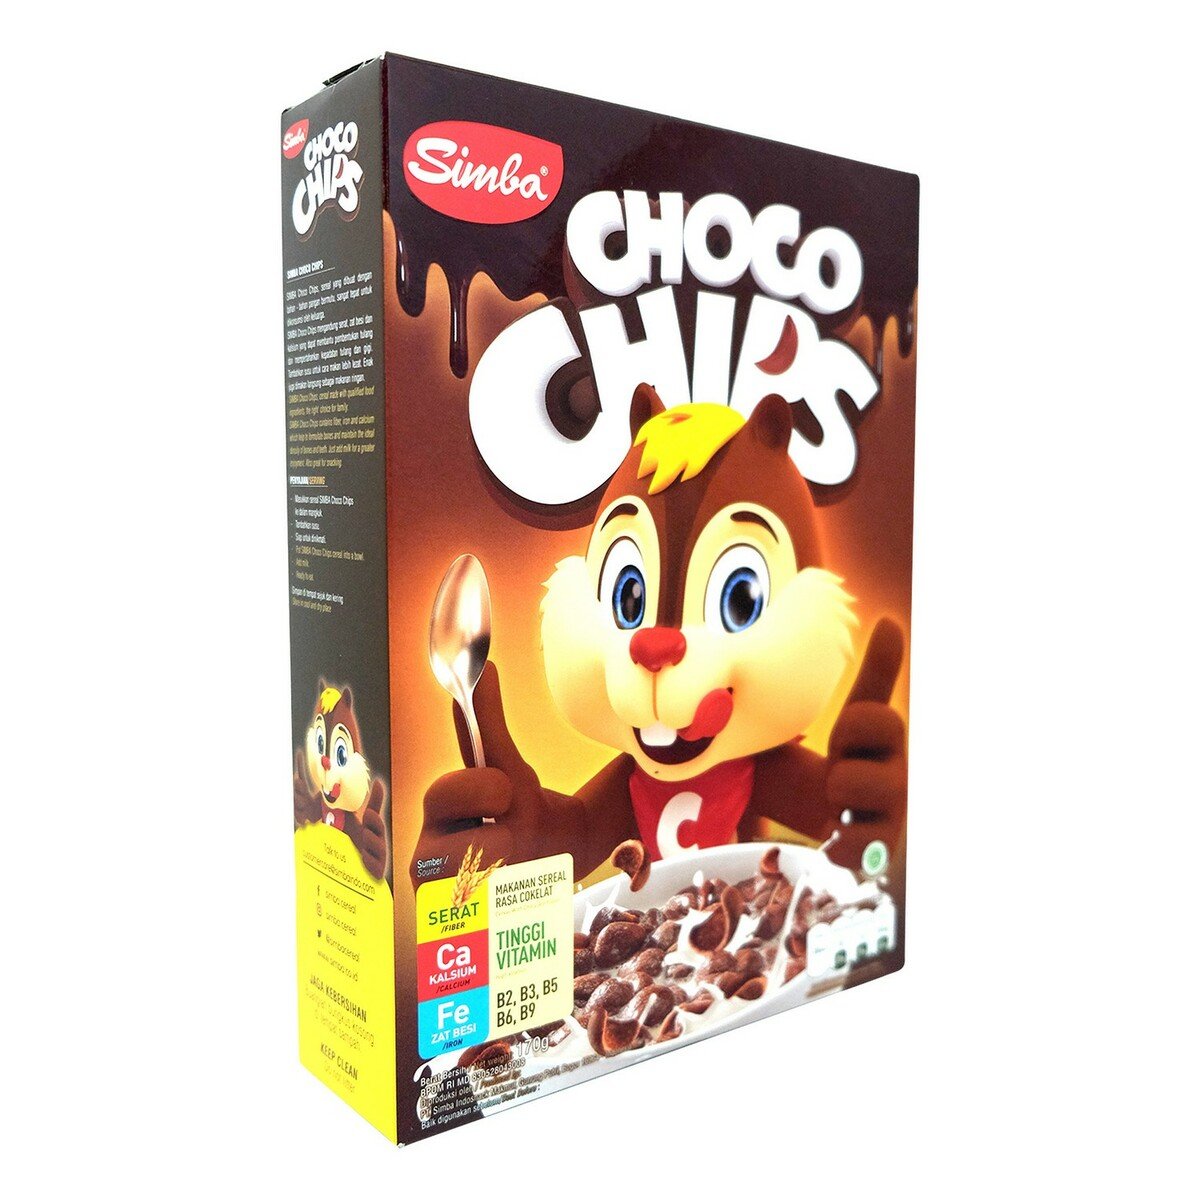 Simba Choco Chips 170g